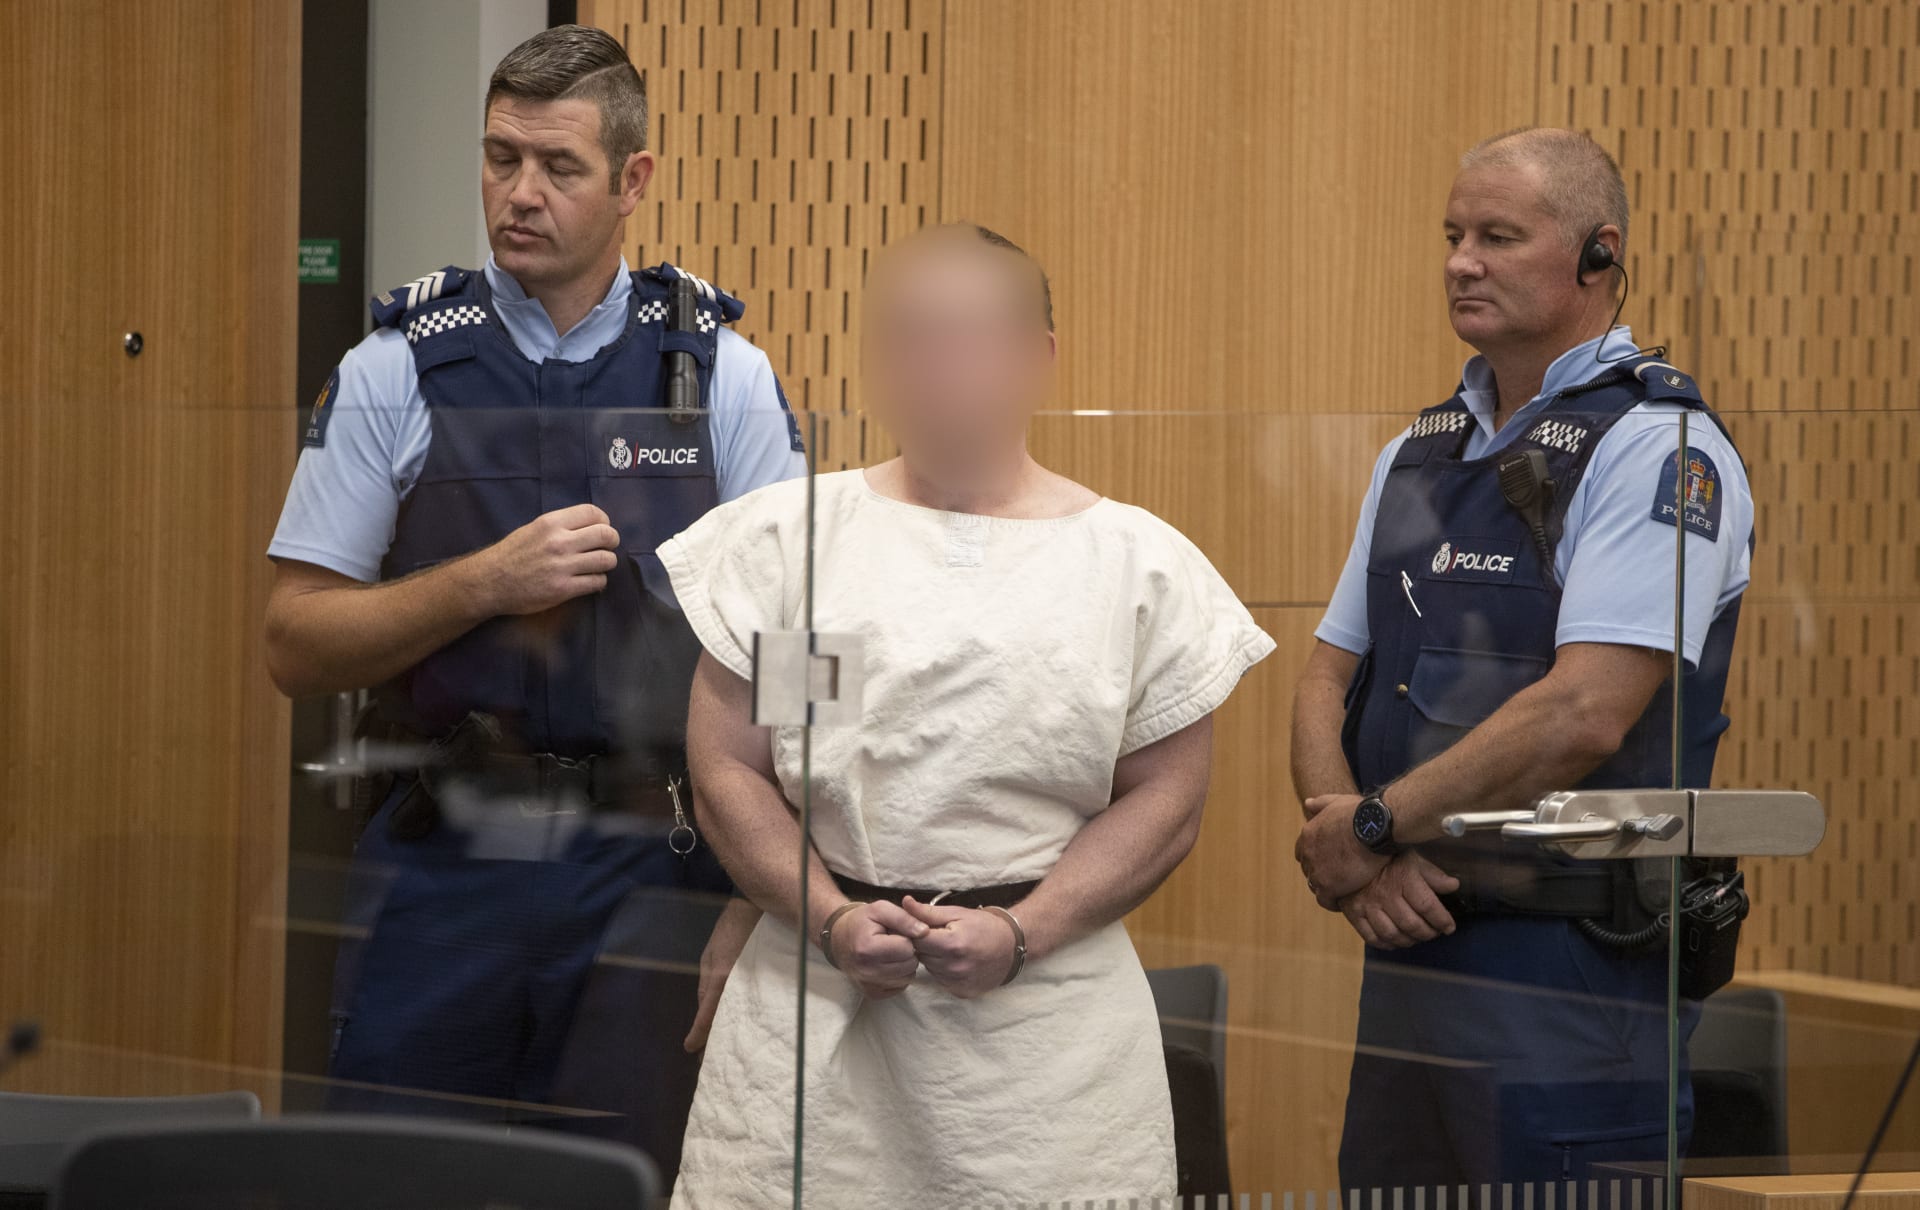 وجهت له تهمة واحدة بالقتل.. تفاصيل أول ظهور للمتهم بهجوم المسجدين في نيوزلندا أمام المحكمة